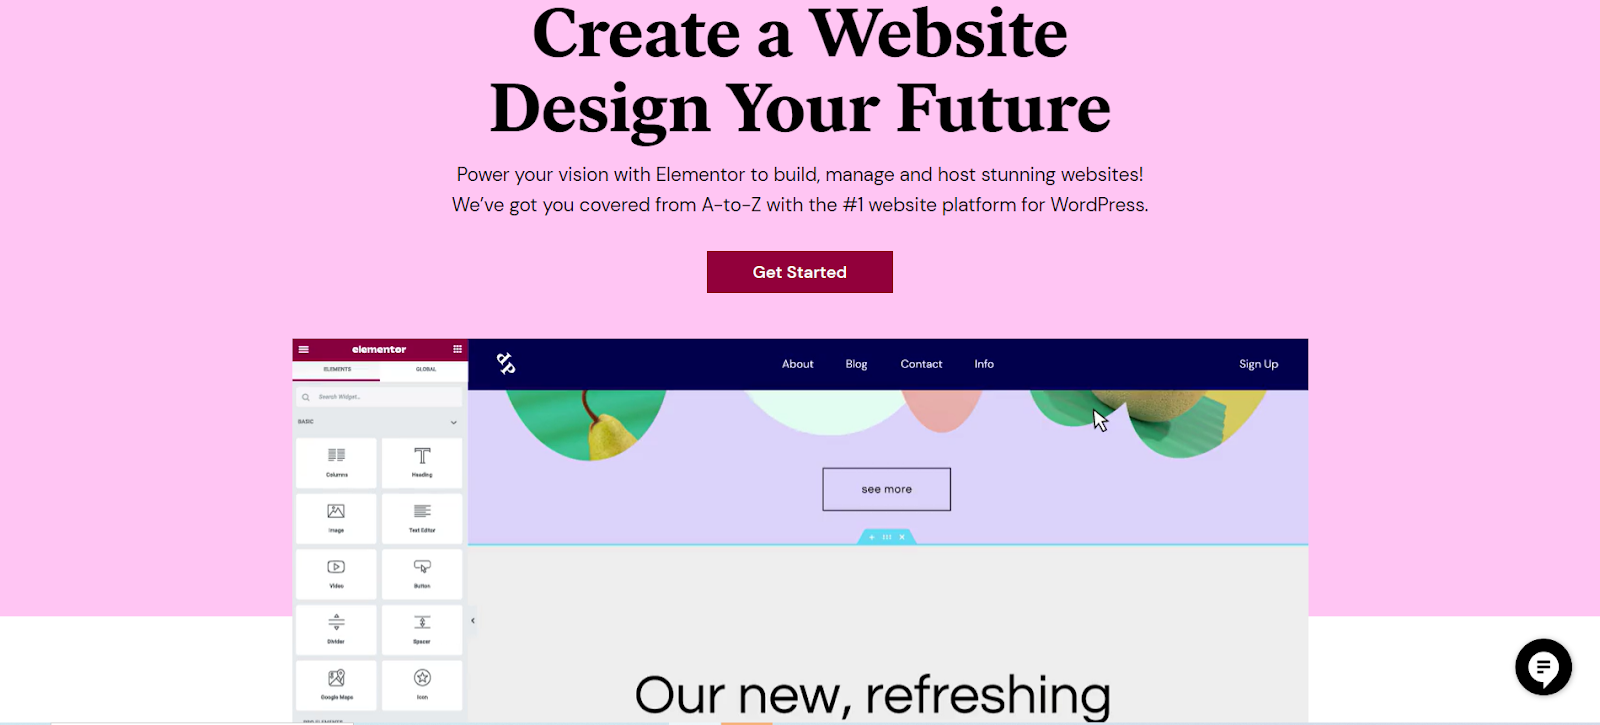 Elementor for your Website Builder